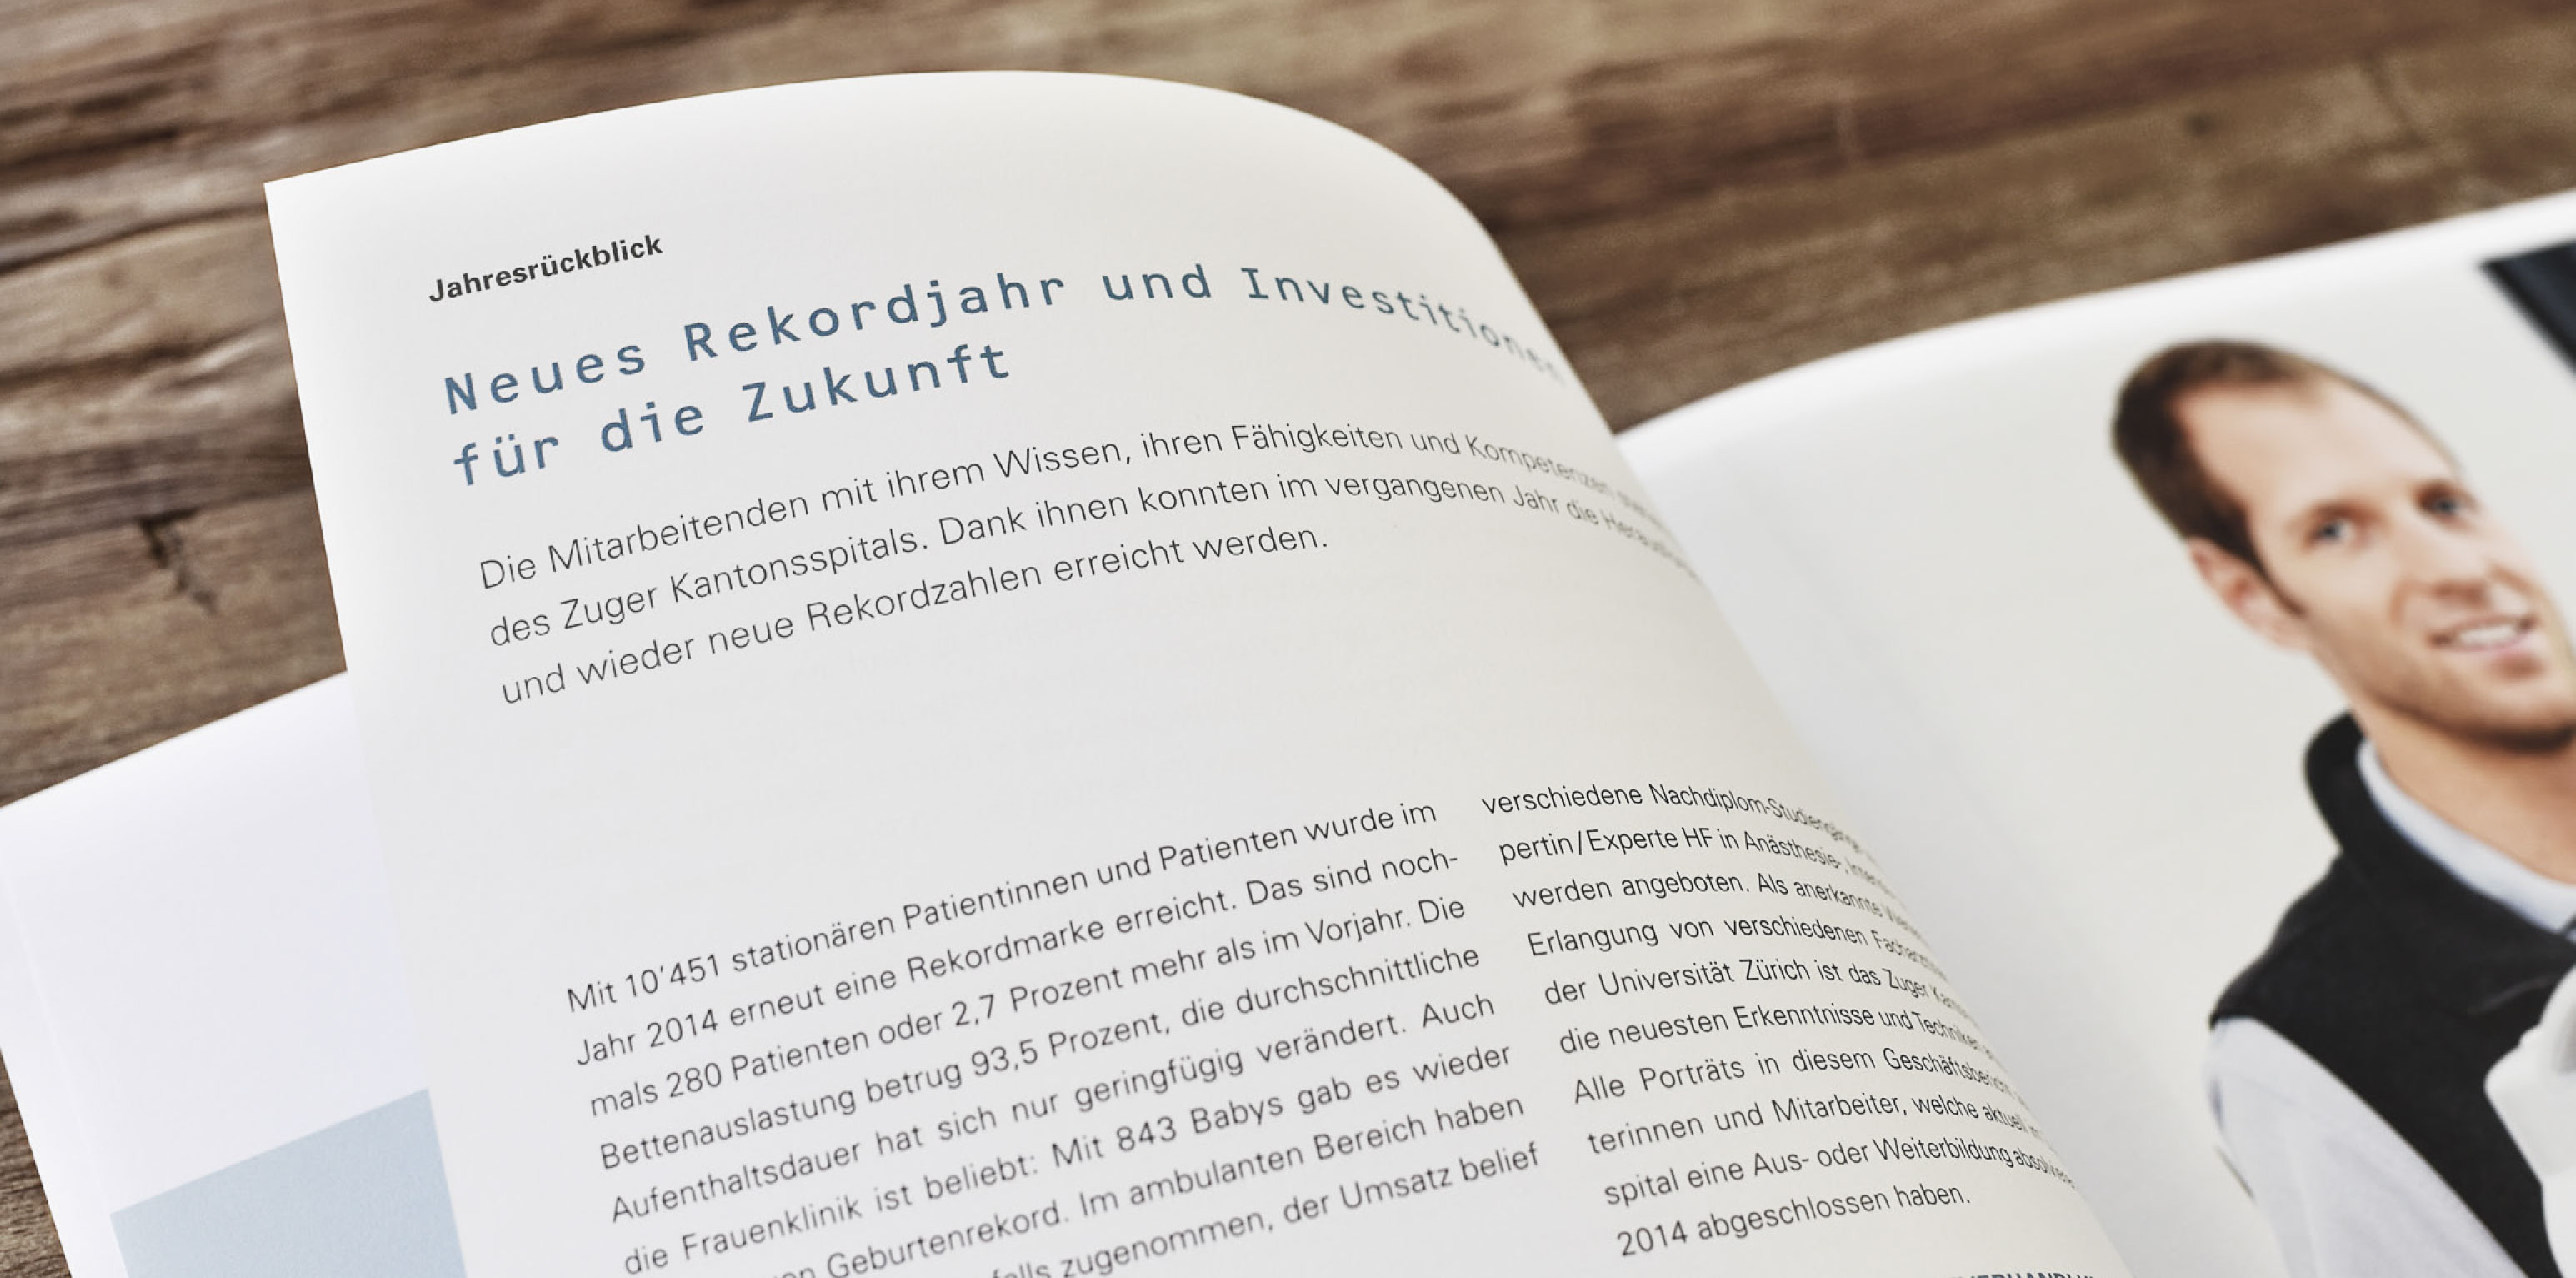 ZGKS_Geschaeftsbericht-Zuger-Kantonsspital-2014-6b